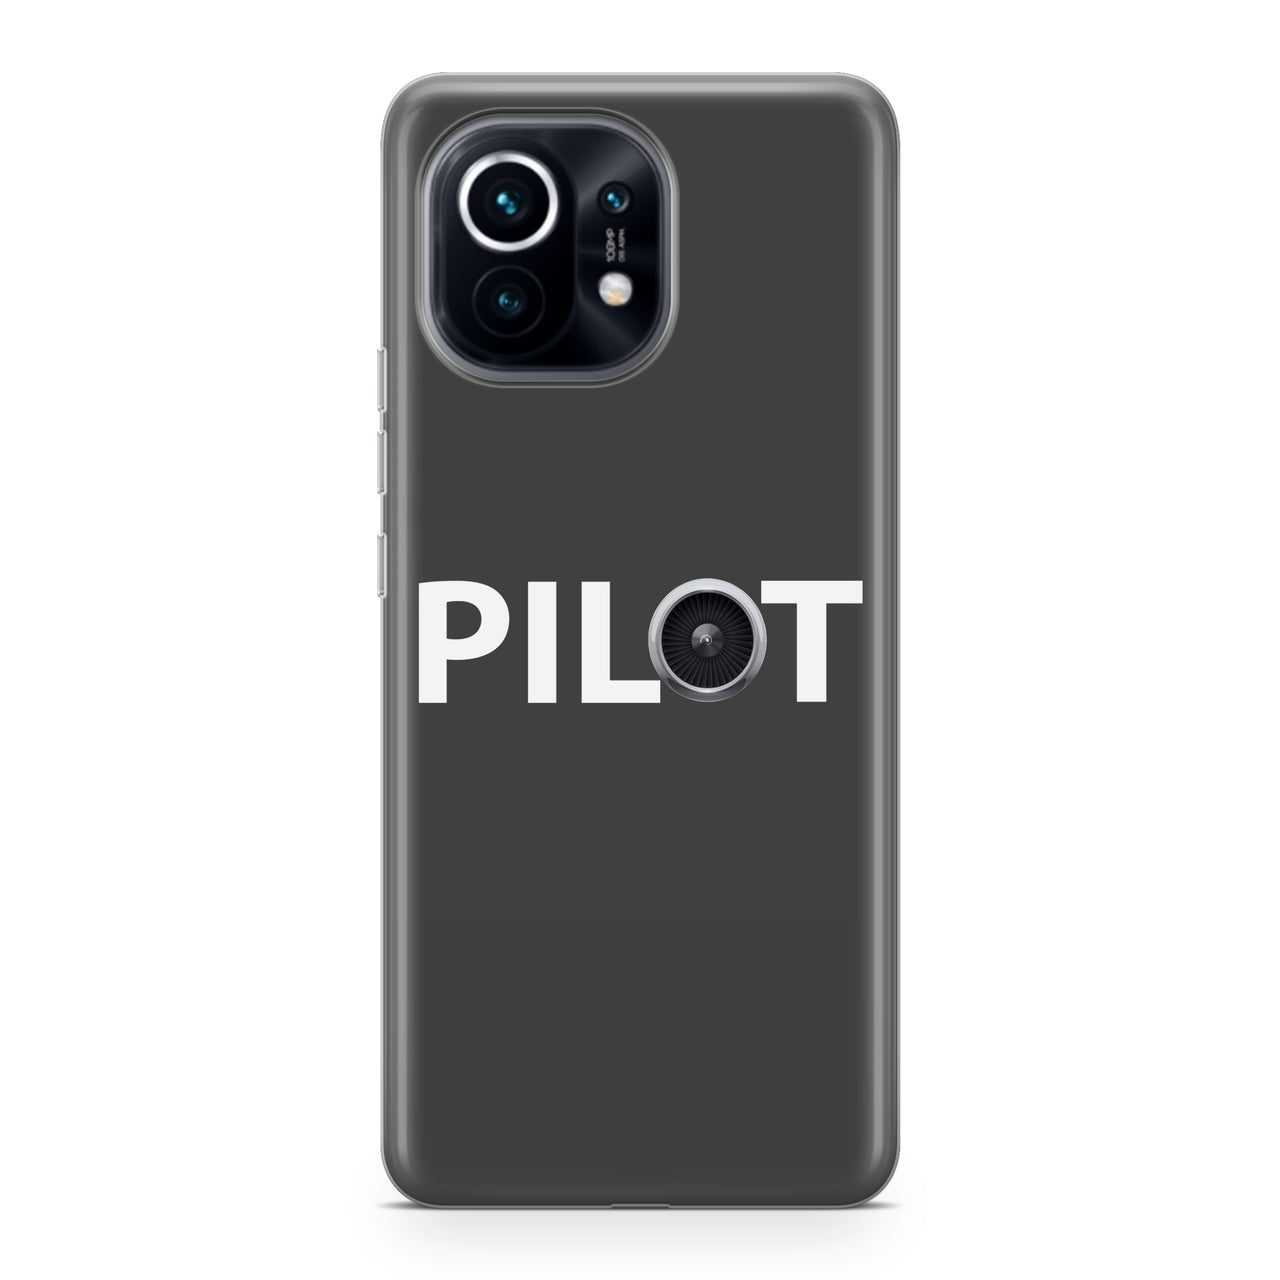 Pilot & Jet Engine Designed Xiaomi Cases